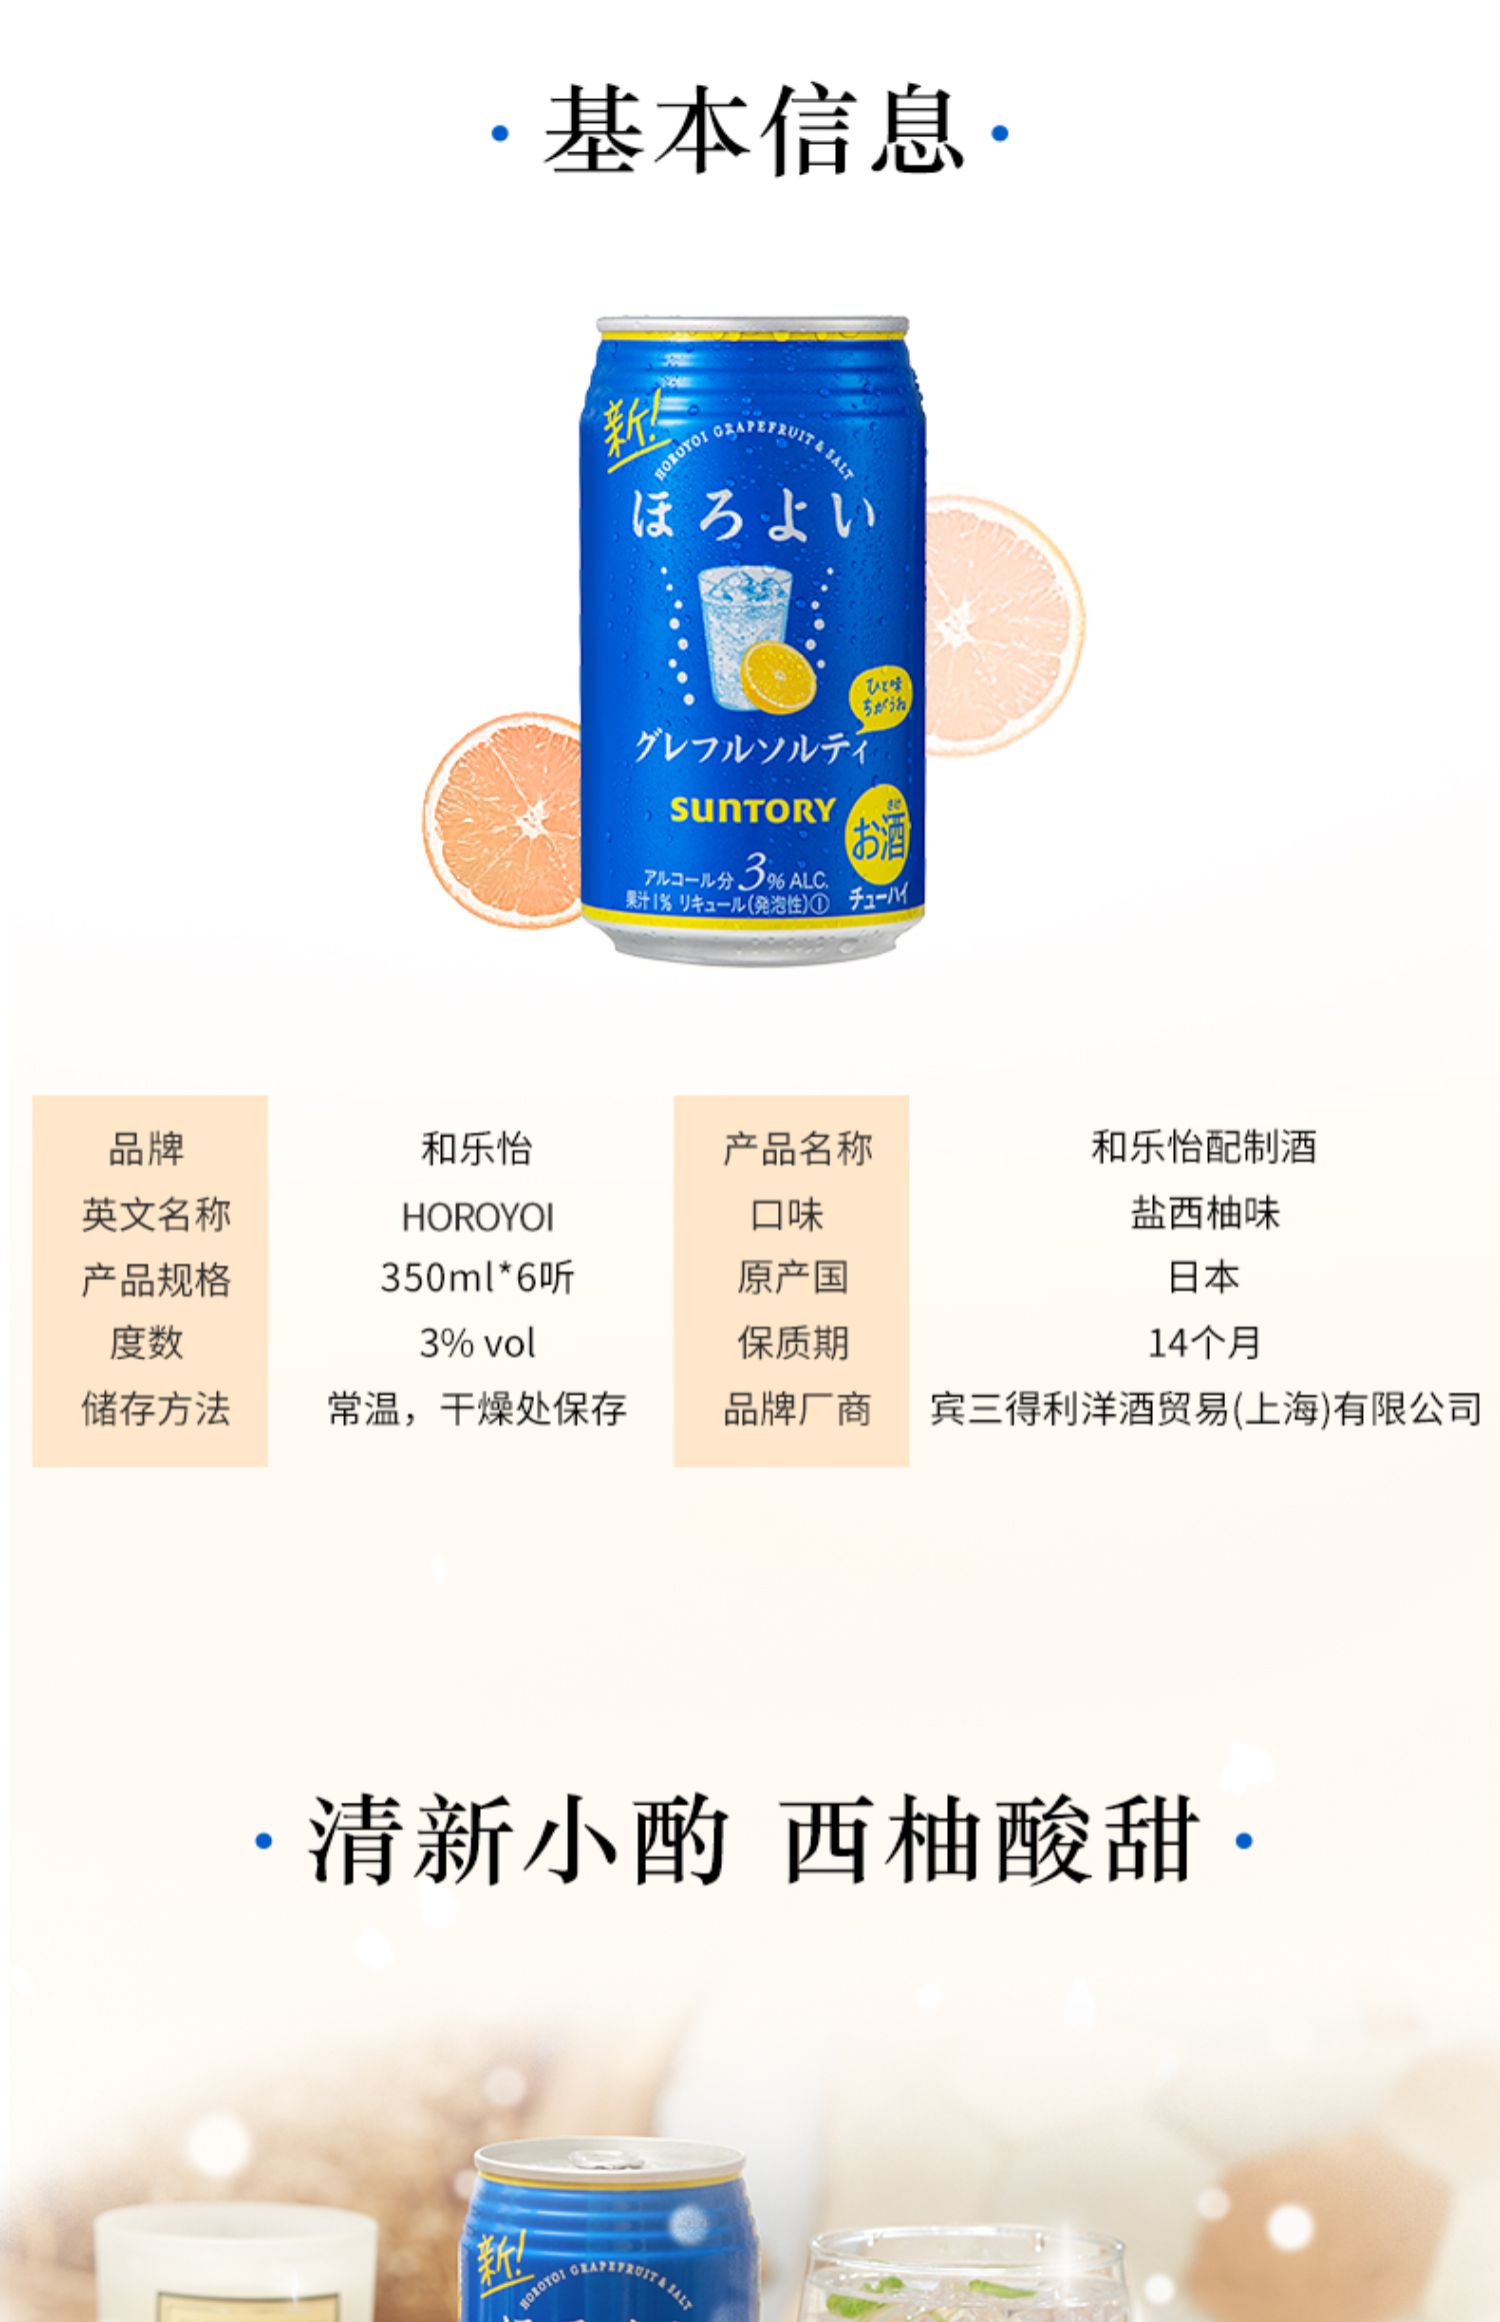 日本三得利和乐怡微醺低度鸡尾酒西柚味6罐